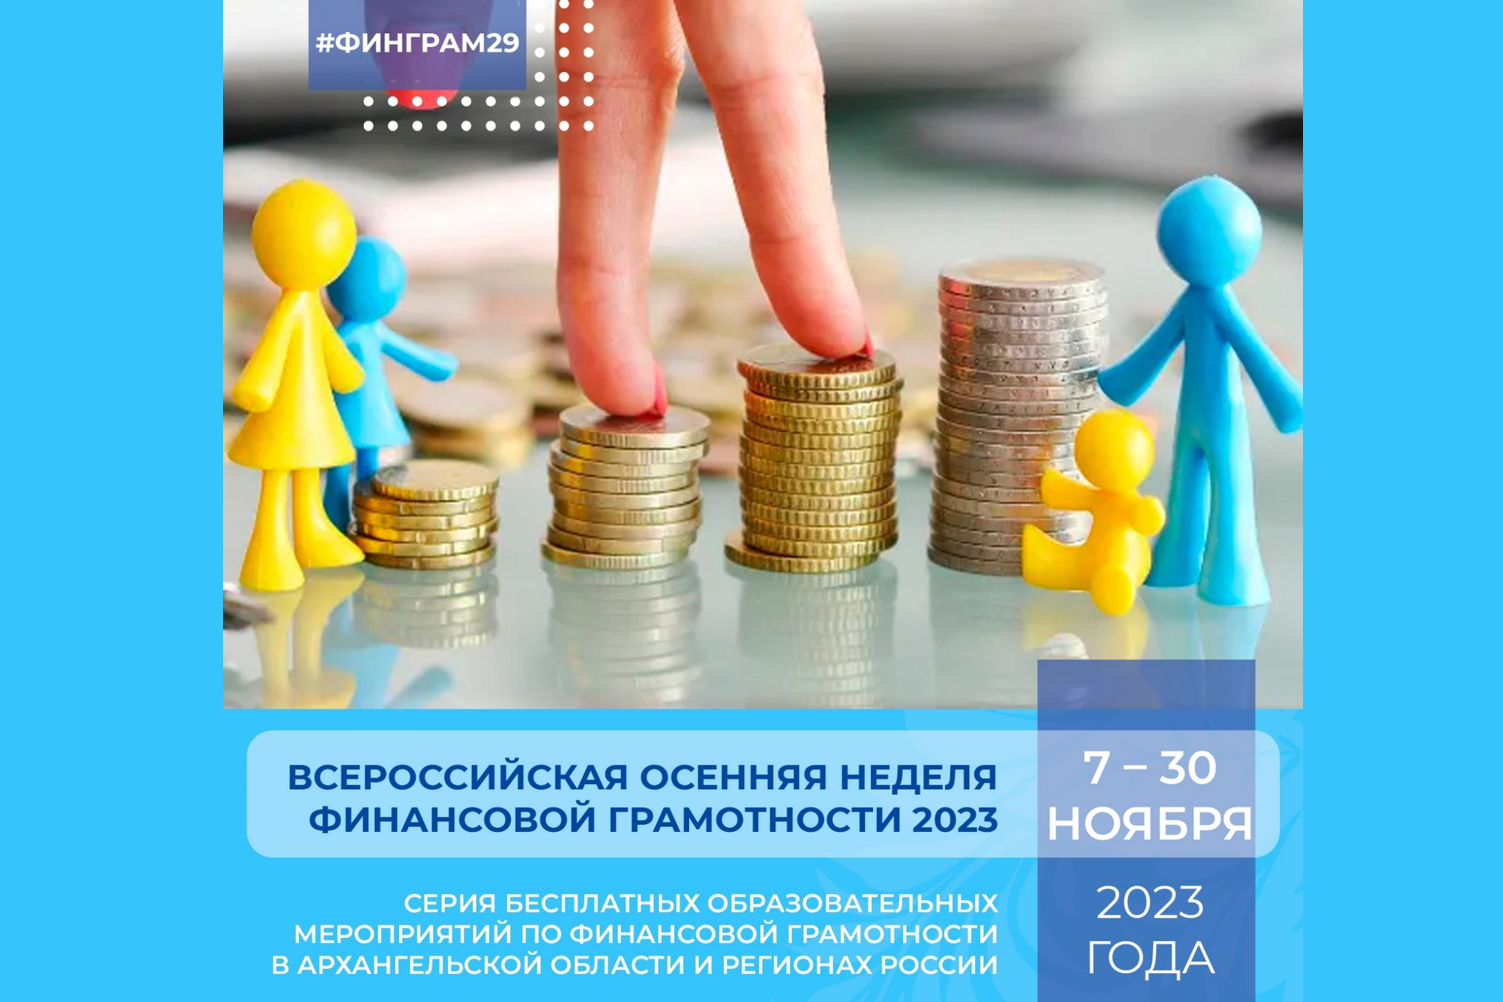 Приглашаем на Всероссийскую осеннюю неделю финансовой грамотности 2023